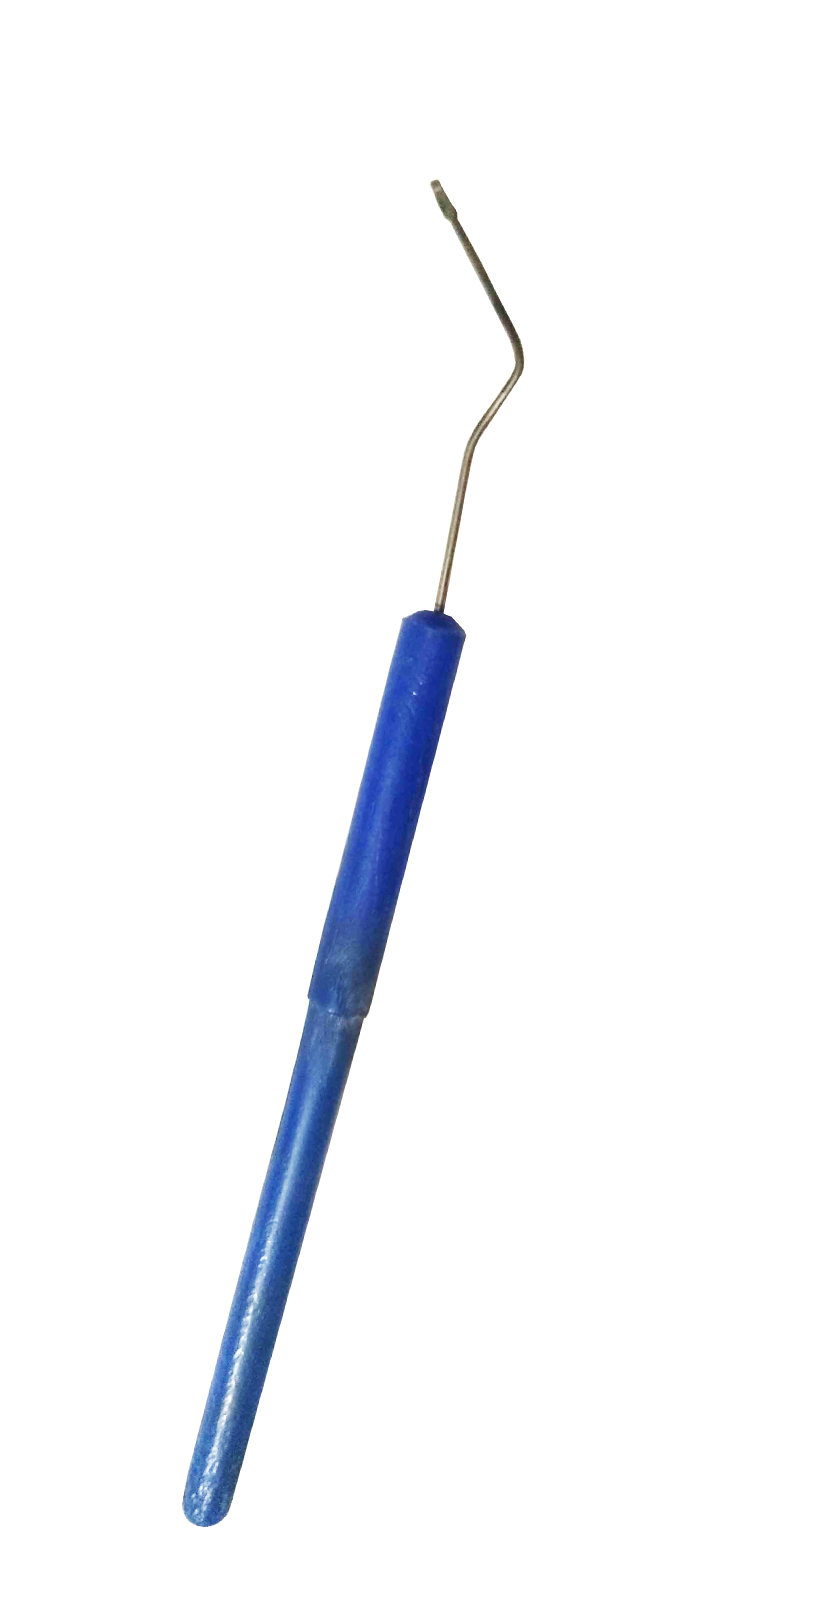 graffting needel in size